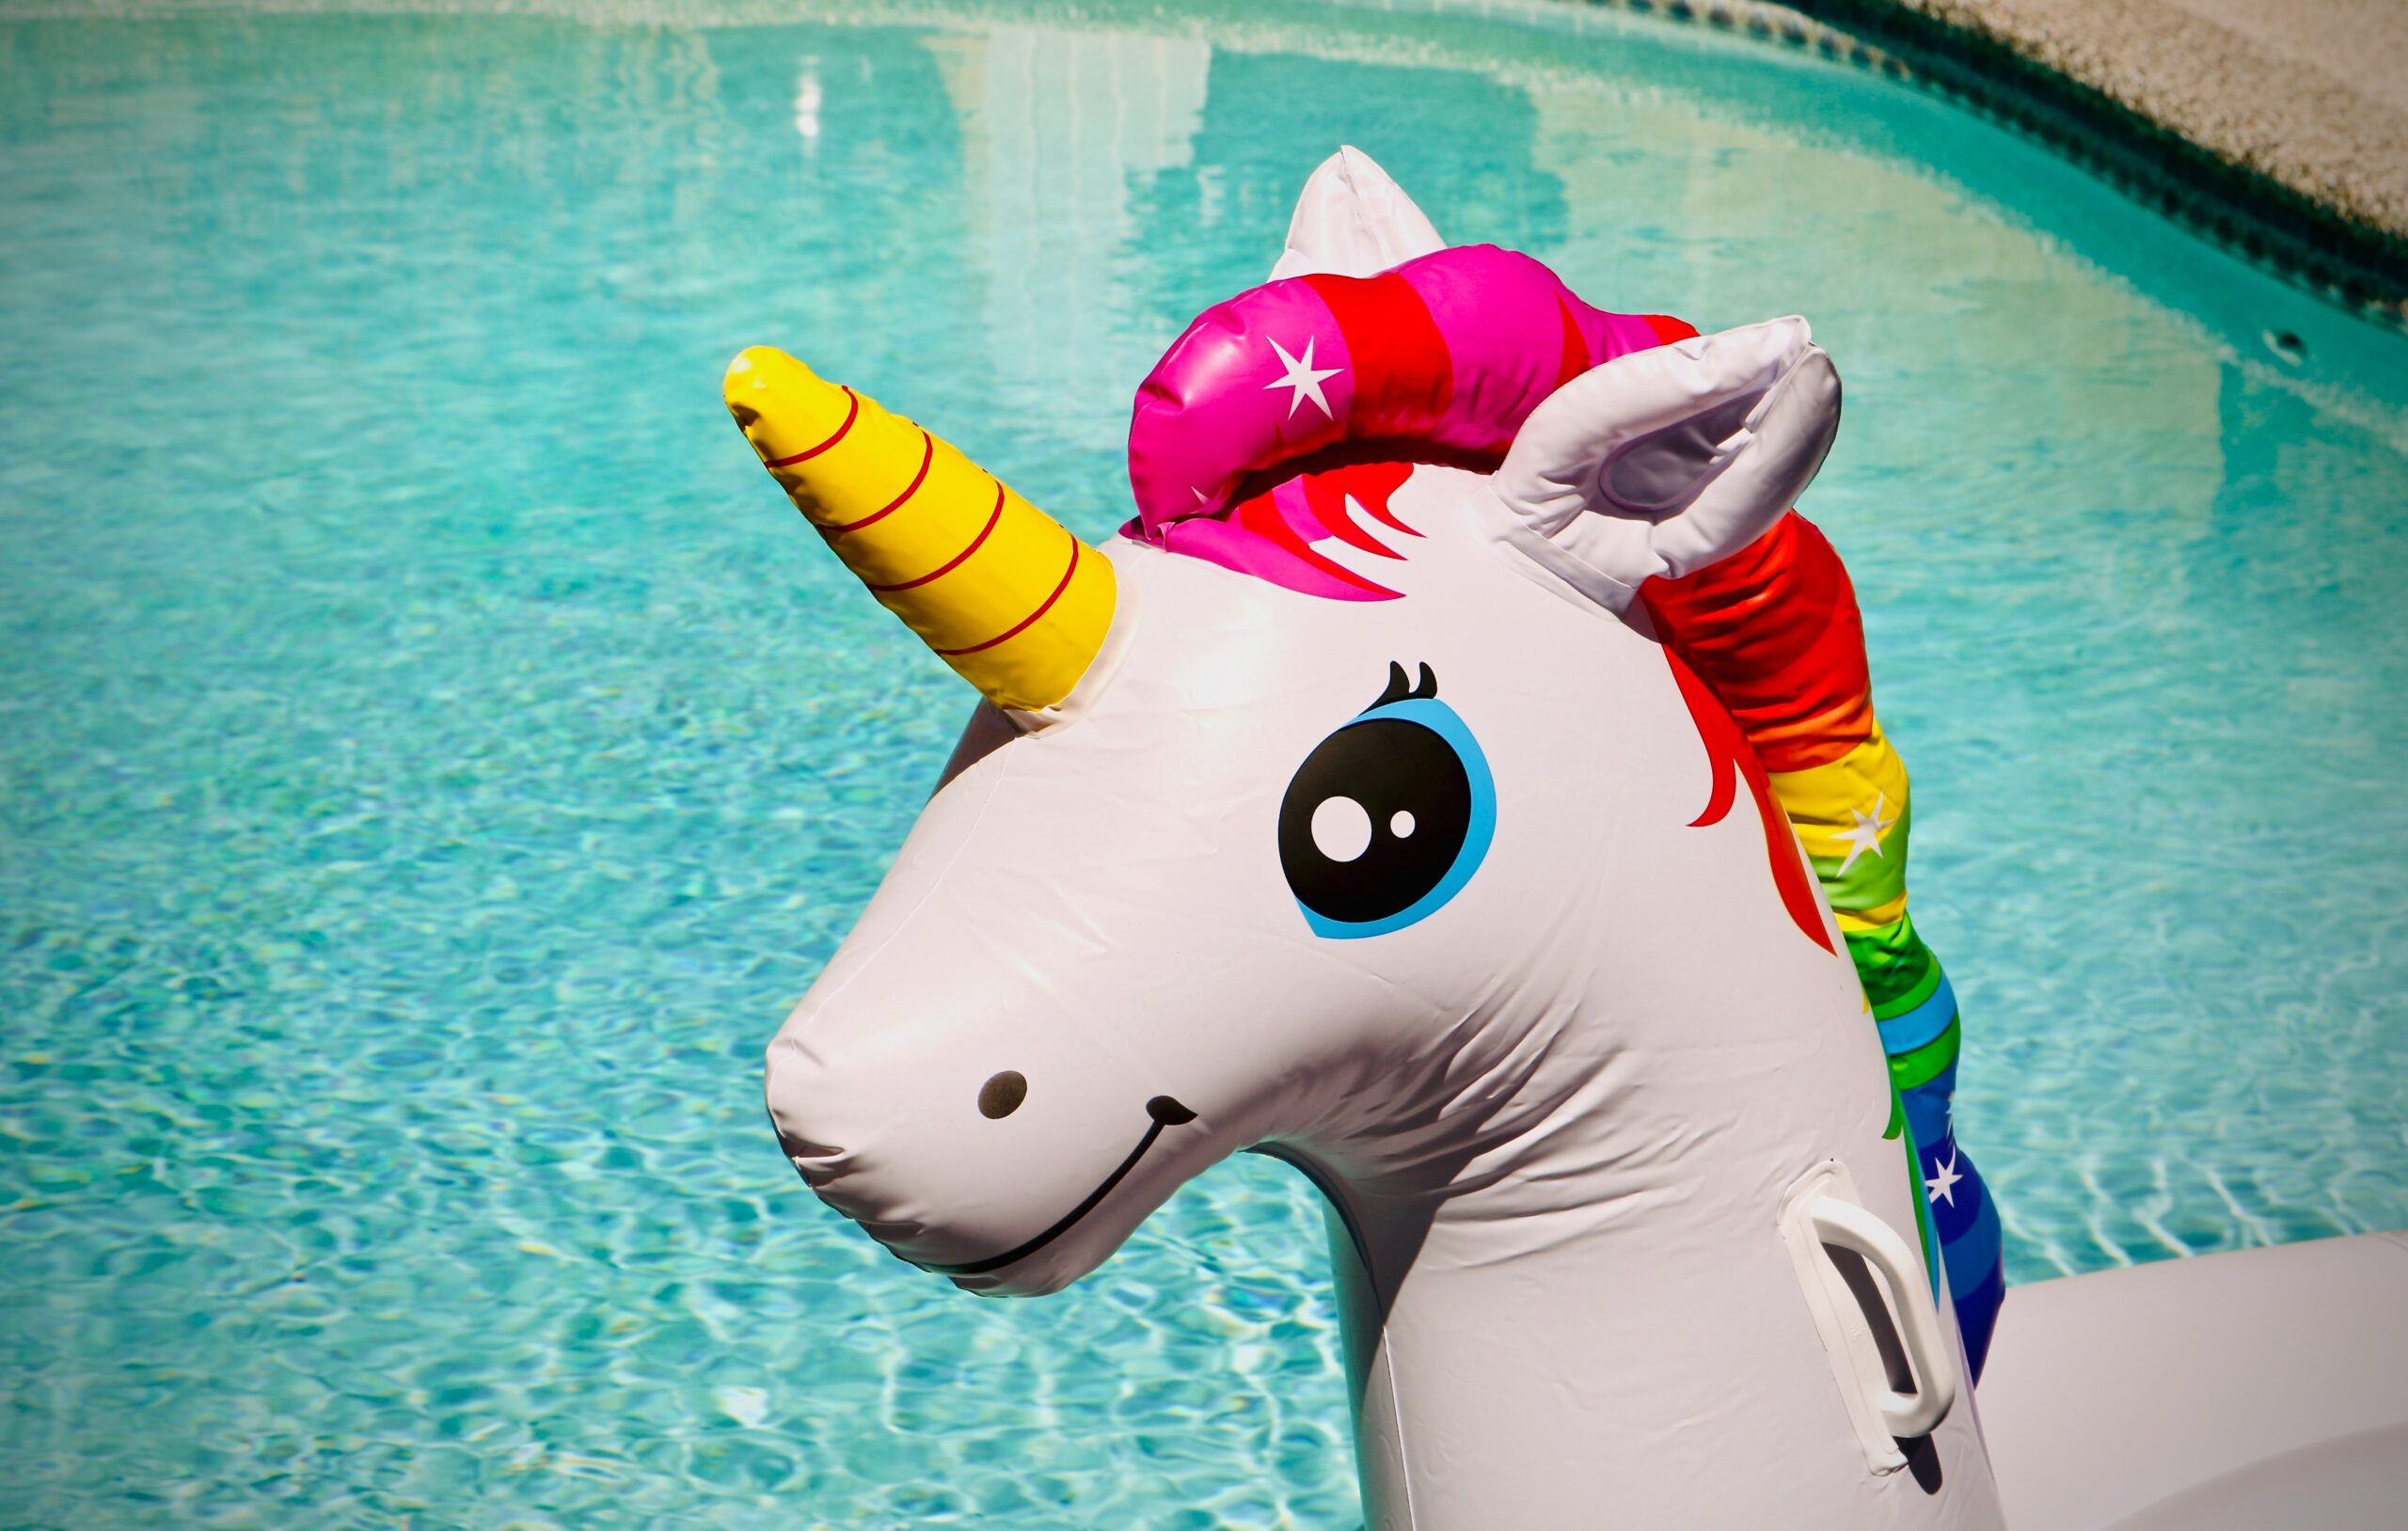 Inflatable unicorn - Econometrics isn't the answer to everything